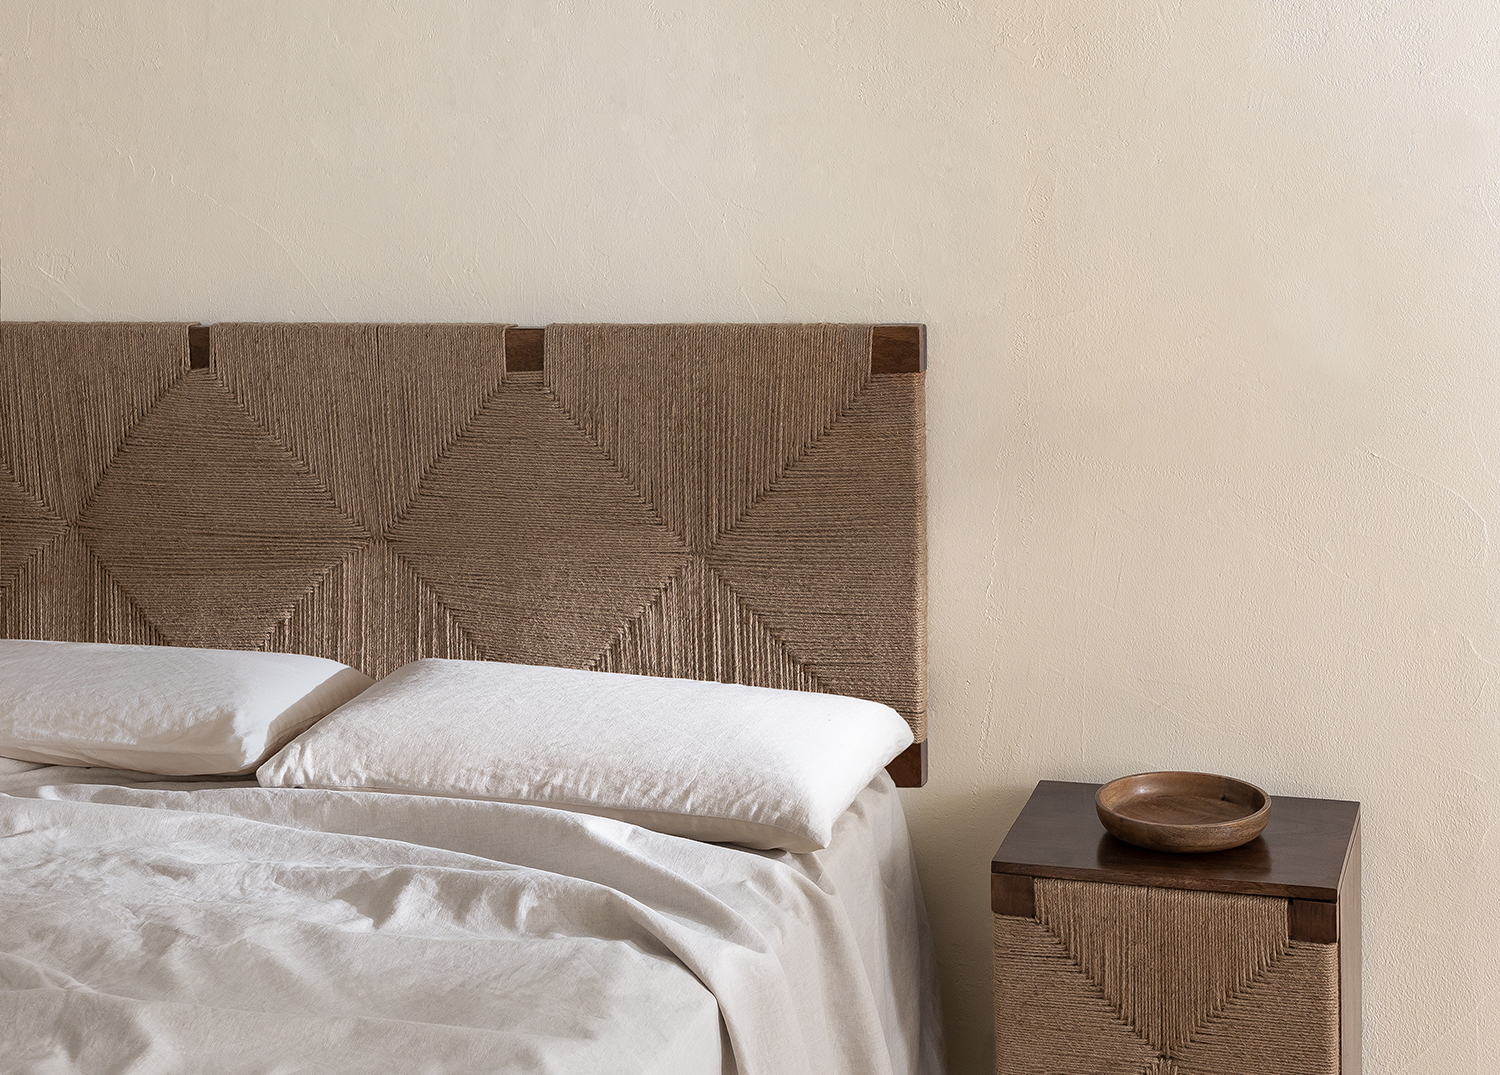  Festnight Kopfteile für Betten Bettkopfteil Wandschutz Bett  Bettkopfteil für Bettgestell Bettgestell Kopfteil Braun 80.5 x 4 x 100 cm